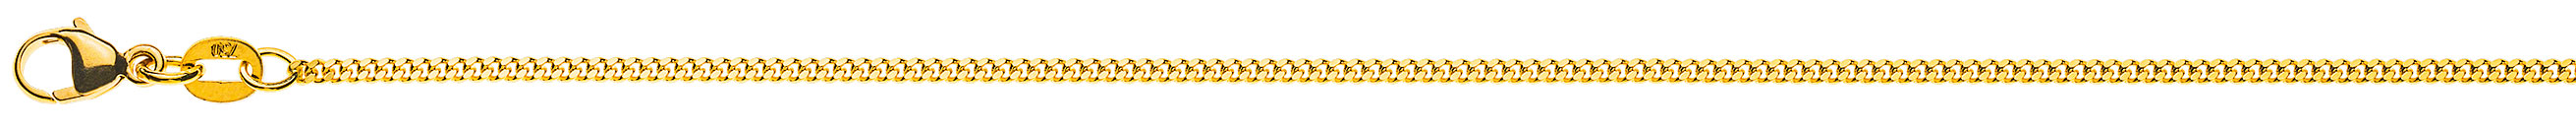 AURONOS Prestige Halskette Gelbgold 18K Panzerkette geschliffen 40cm 1.6mm